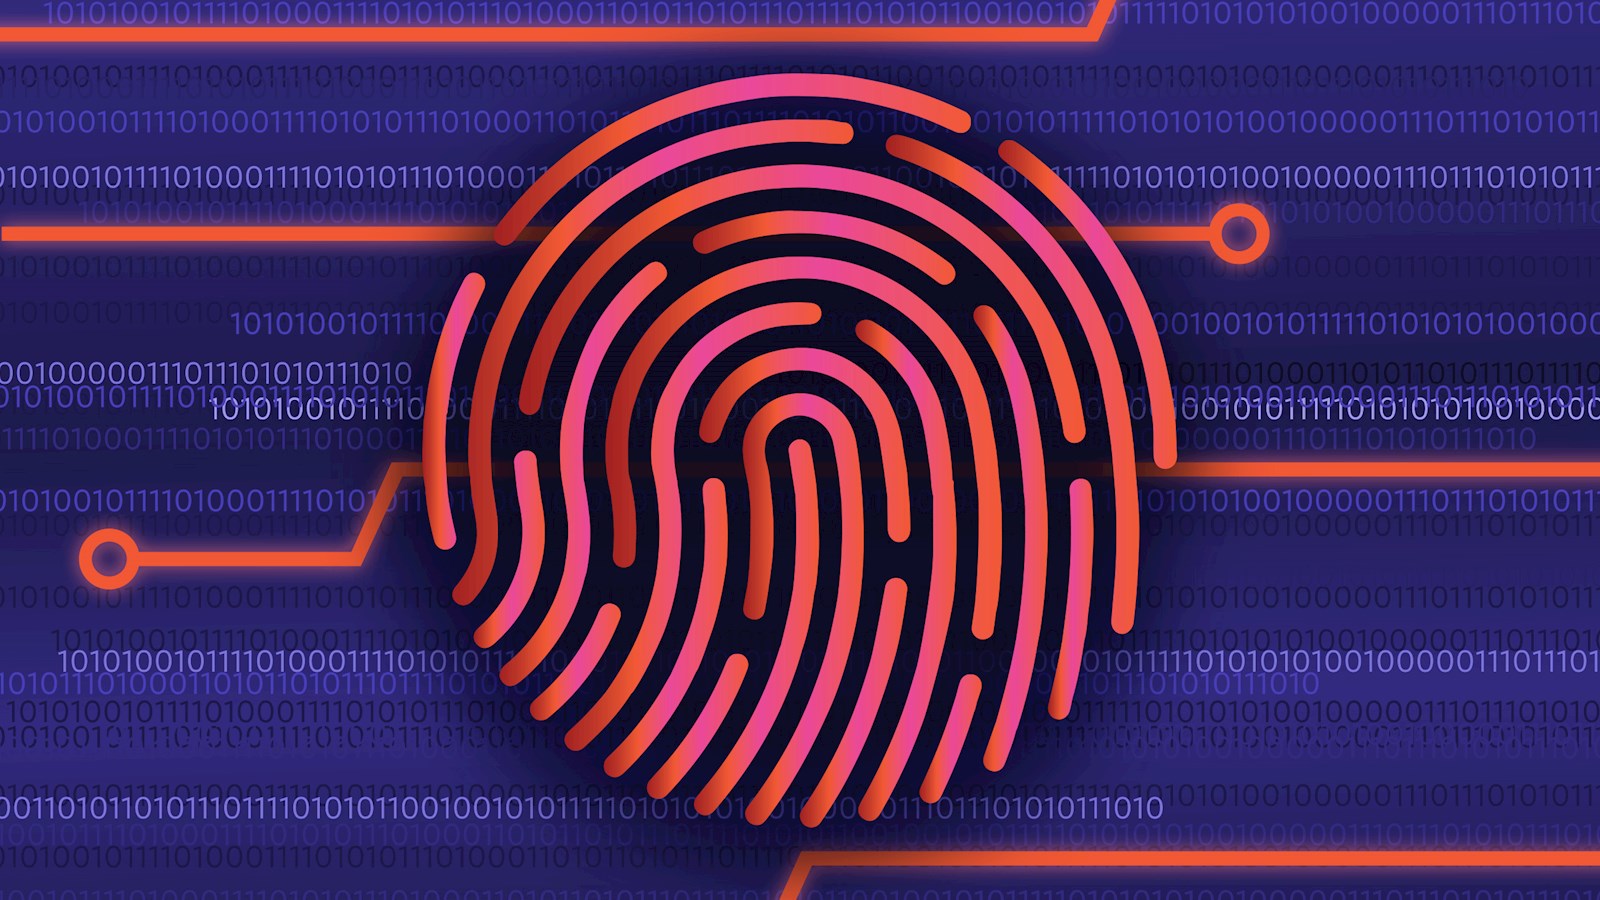 online fingerprint